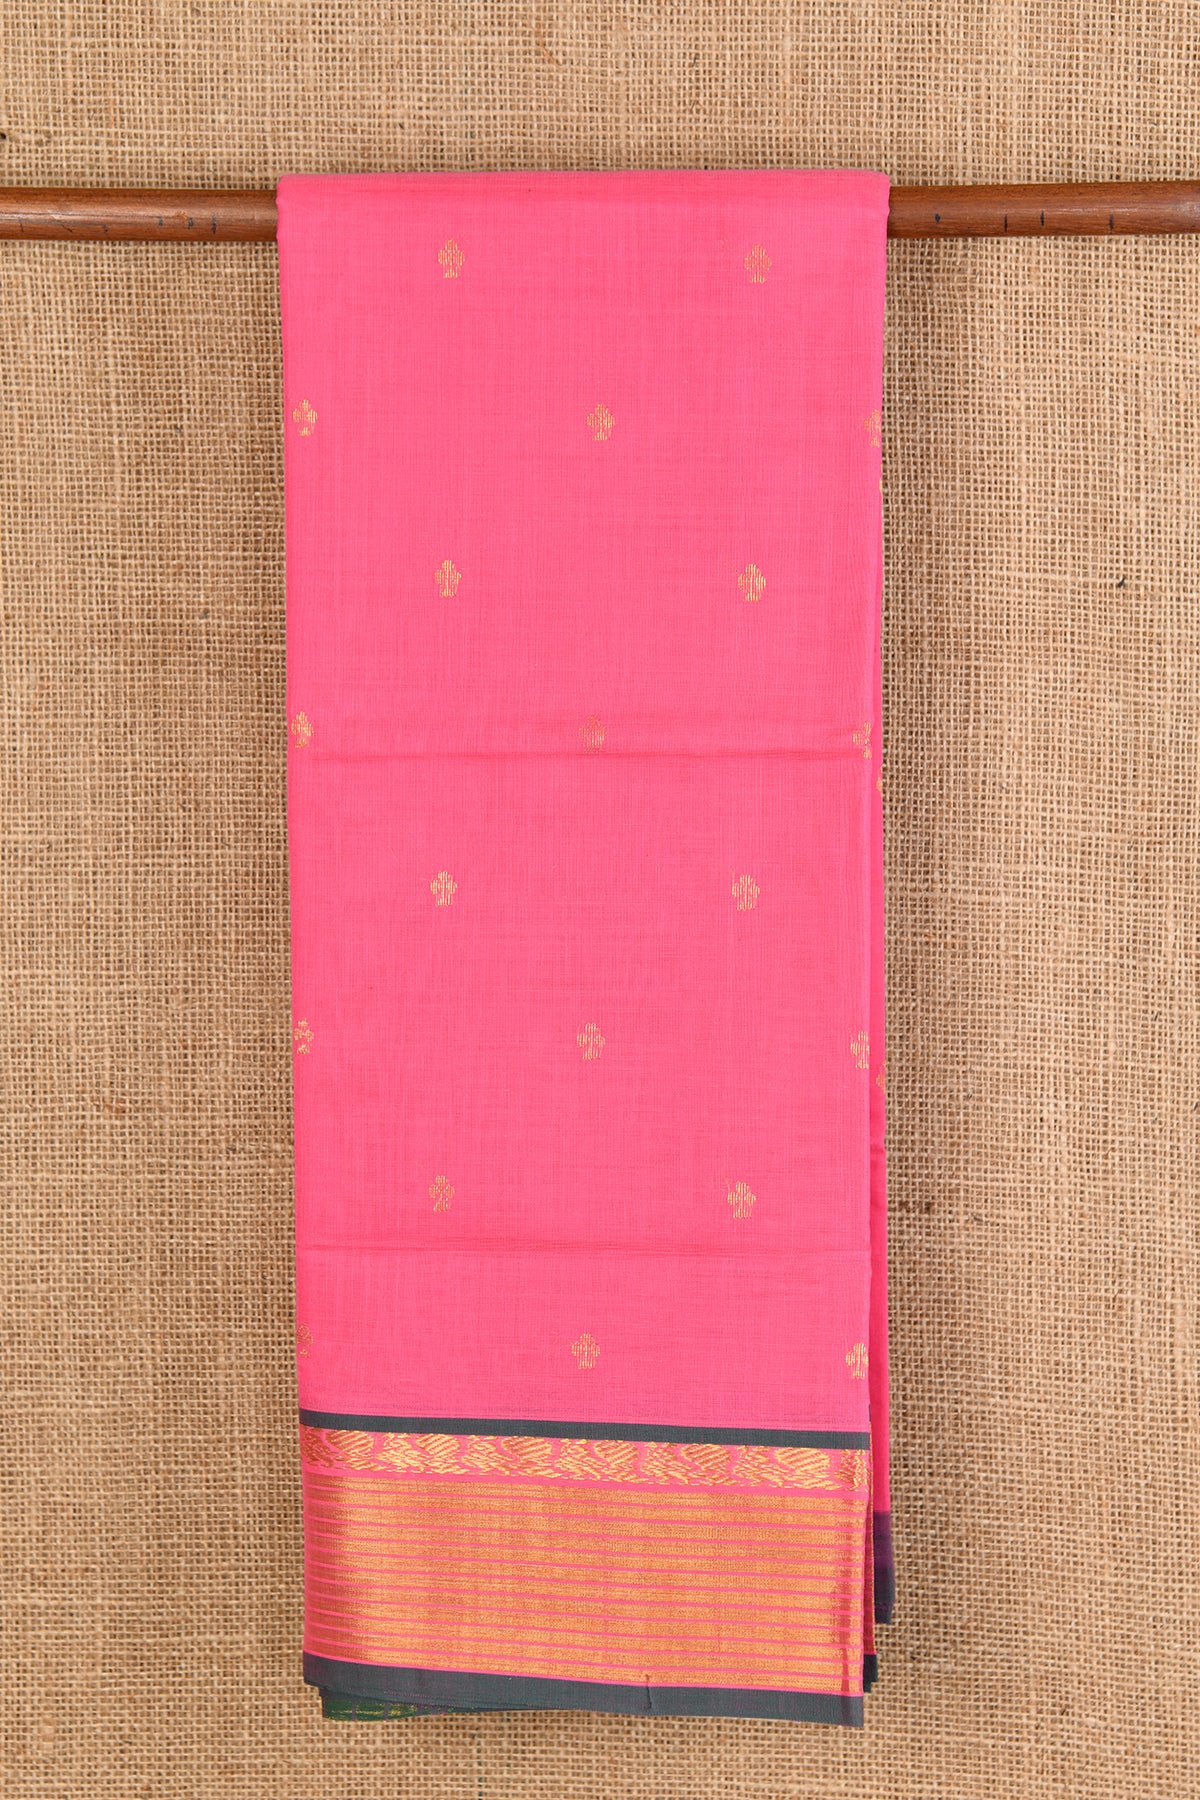 Floral Motif Rose Pink Venkatagiri Cotton Saree